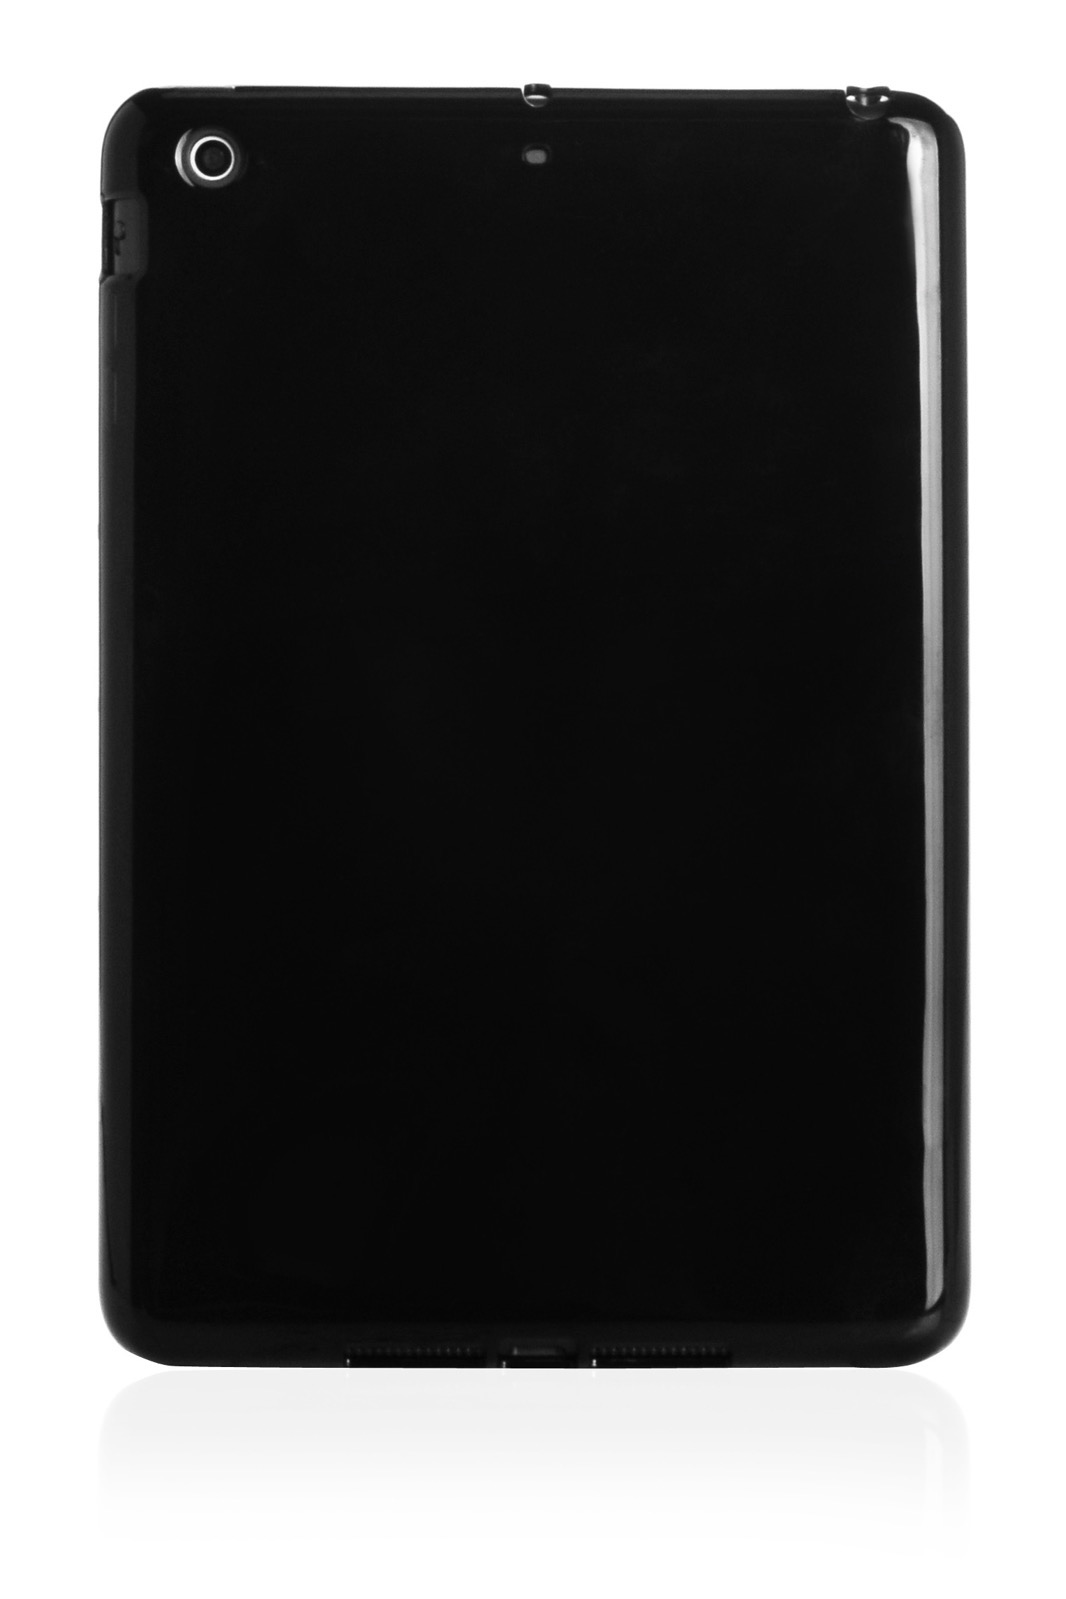 Чехол для планшета iNeez накладка силикон мыльница 410234 для Apple iPad mini 1/2/3 7.9